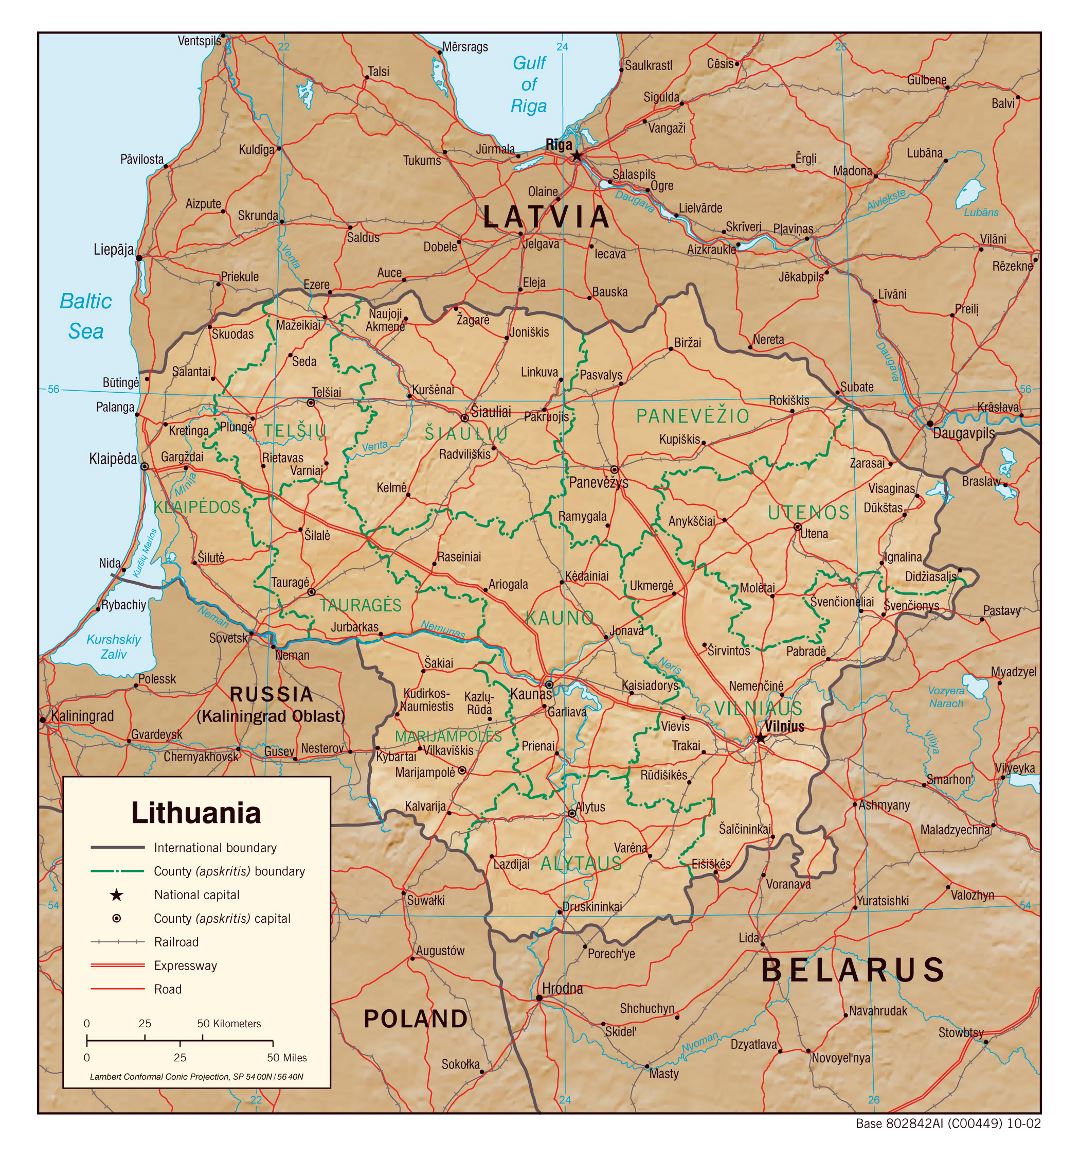 Gran escala mapa político y administrativo de Lituania con alivio, carreteras, vías férreas y principales ciudades - 2002